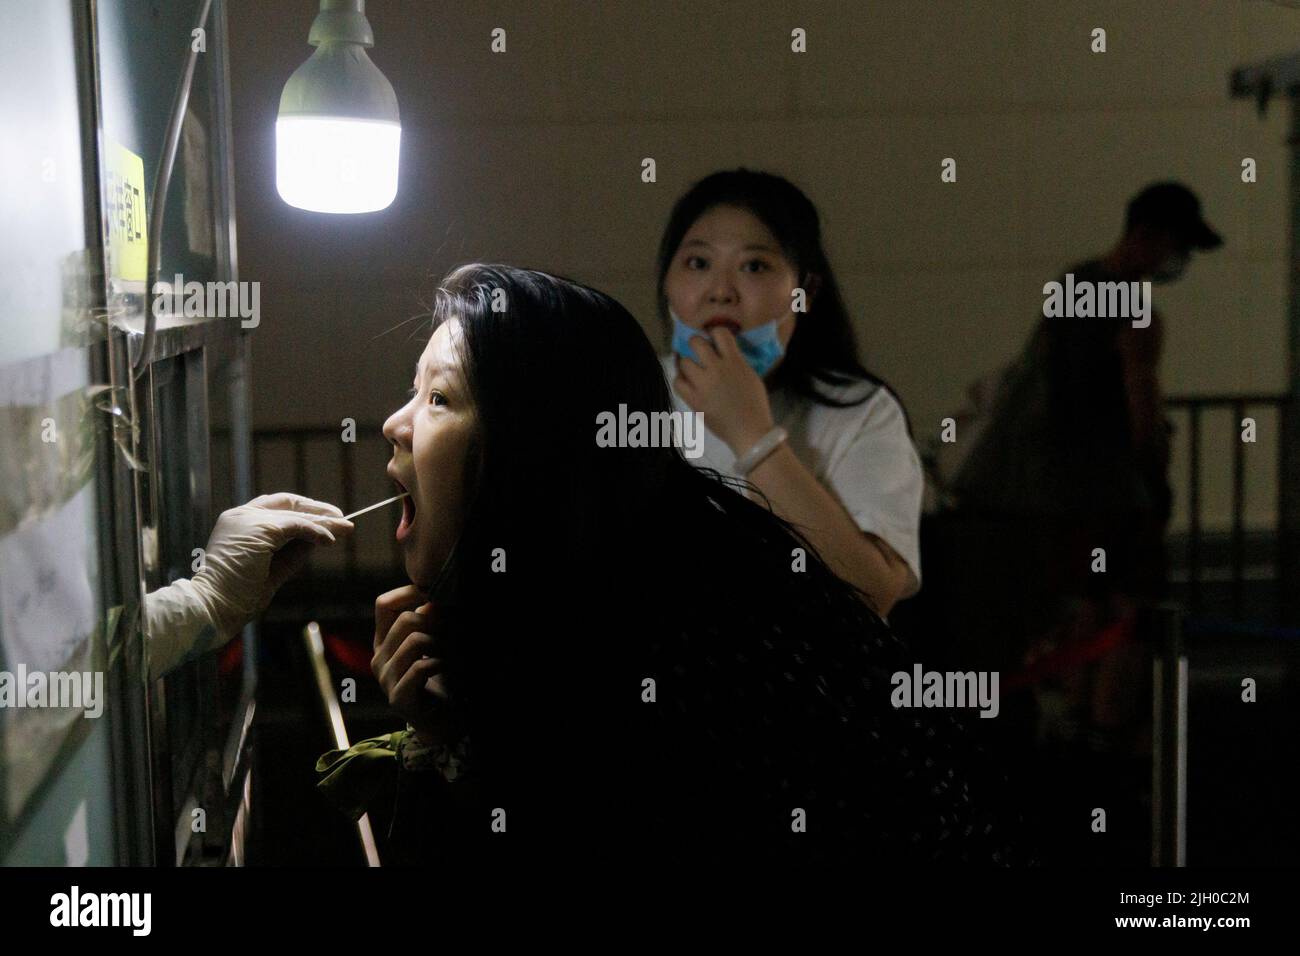 Una donna ottiene un test di tampone in una stazione di analisi degli acidi nucleici, a seguito di un focolaio di coronavirus (COVID-19), a Pechino, Cina, 14 luglio 2022. REUTERS/Thomas Peter Foto Stock